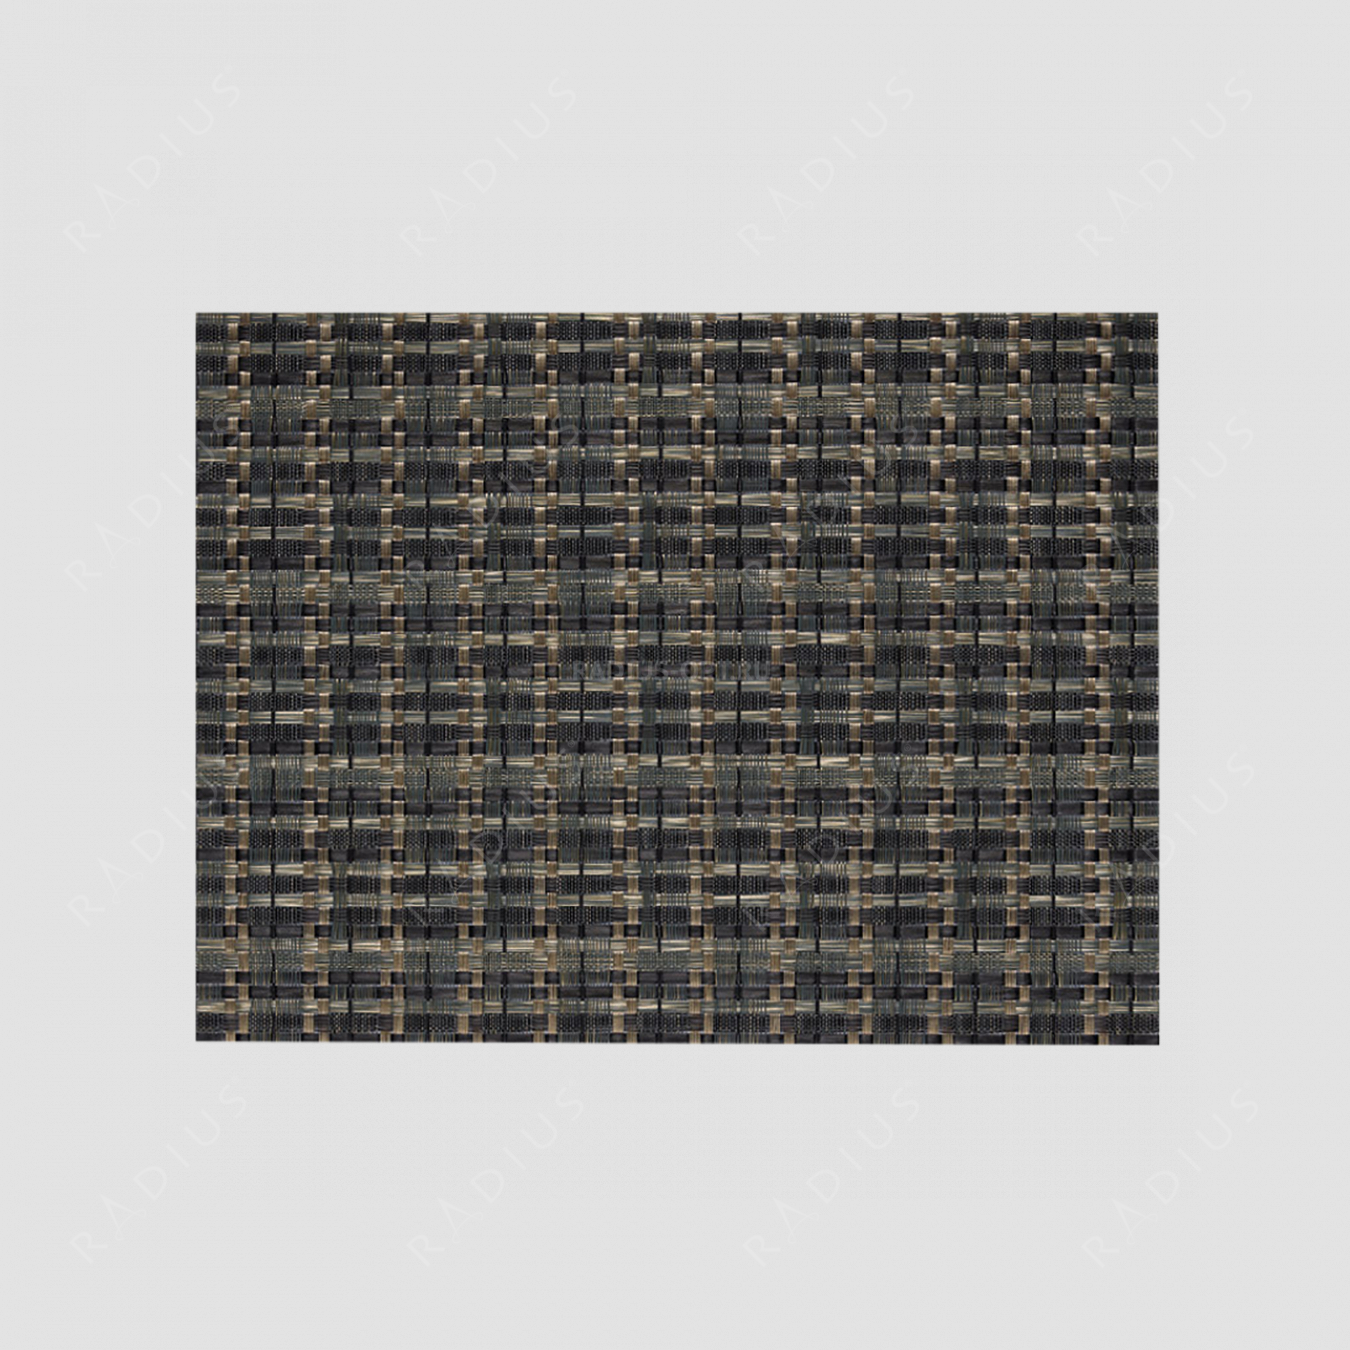 Салфетка подстановочная, винил, 42х32 см, цвет темно-оливковый / черный, Edel, серия Saleen, Westmark, Германия